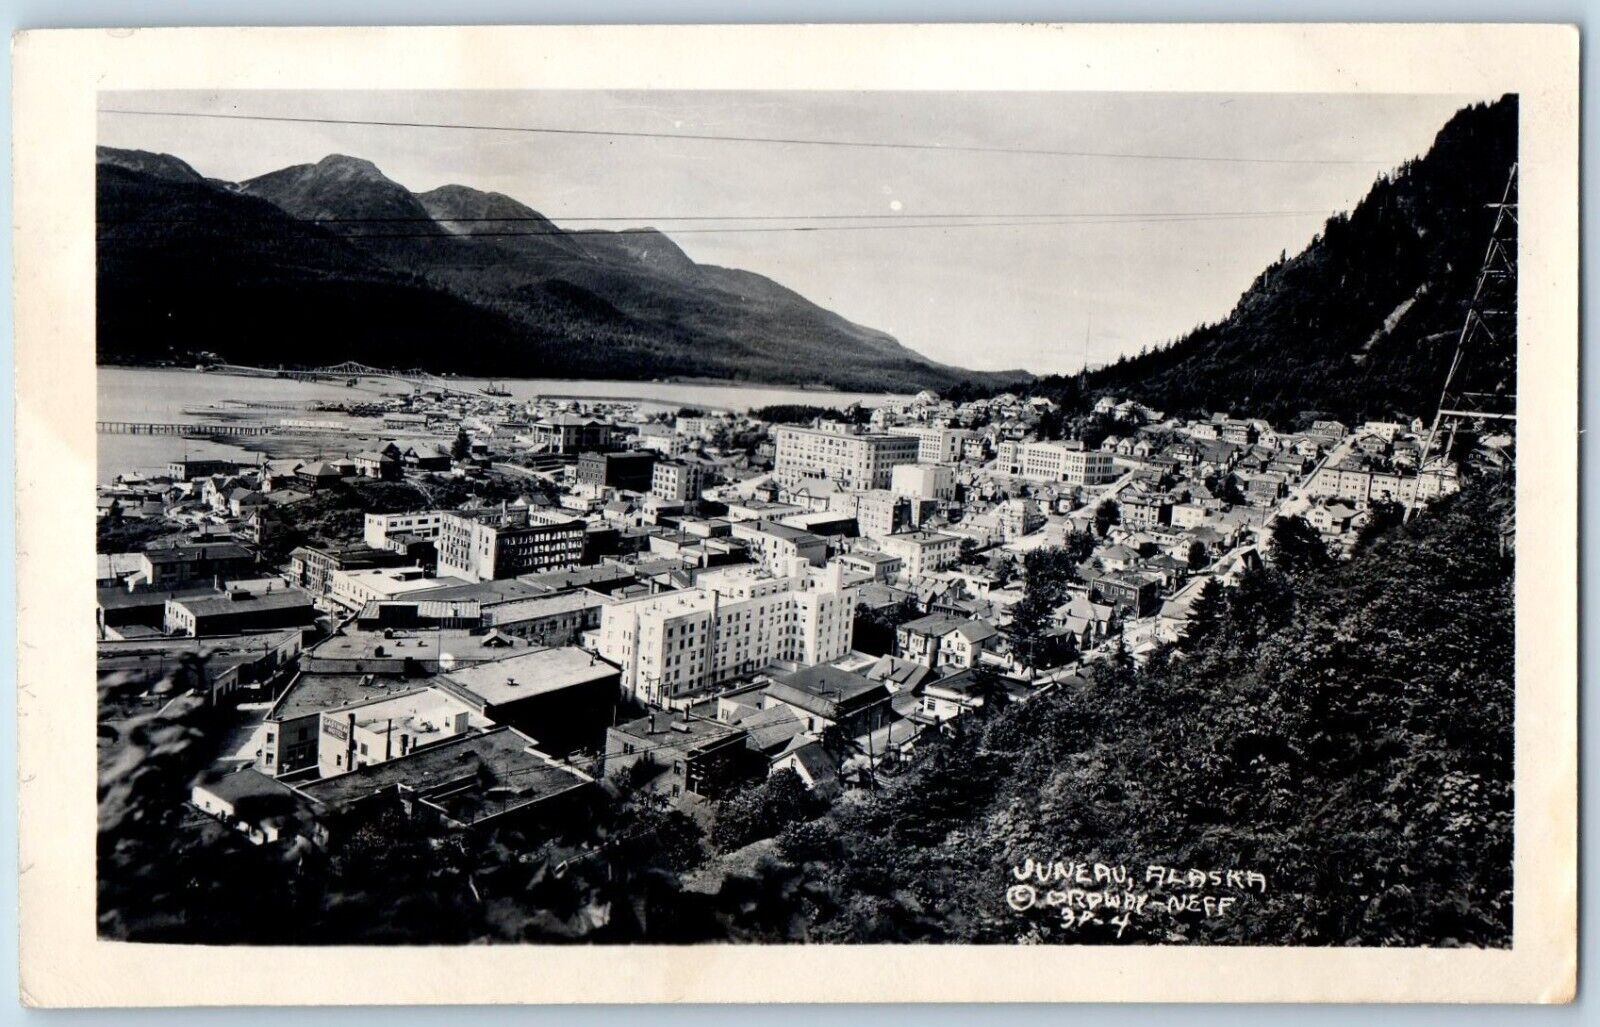 Juneau Alaska AK Postcard RPPC Photo Bird's Eye View Ordway Neff c1930's Vintage